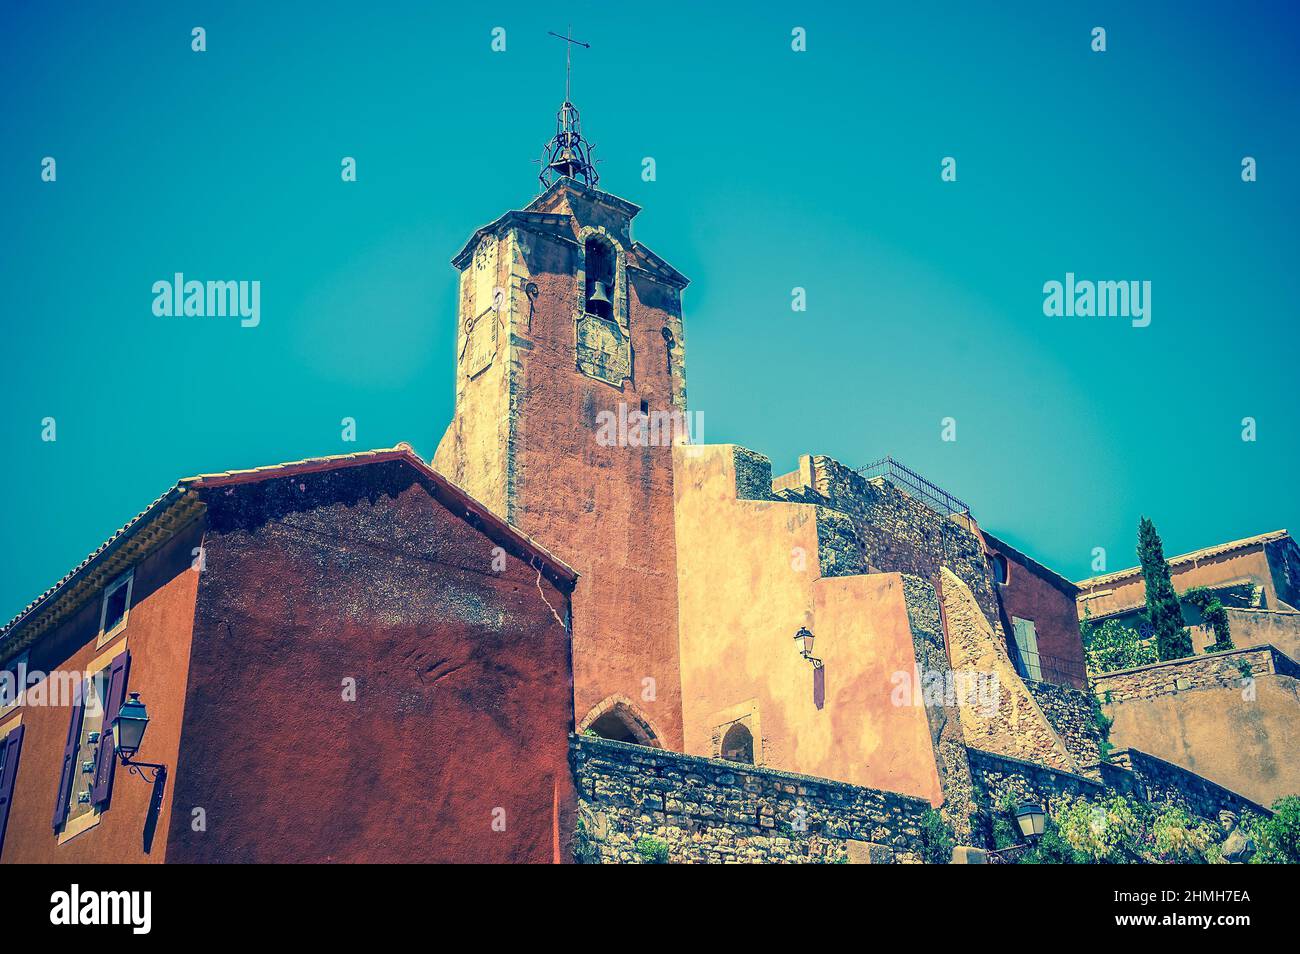 Roussillon ocre villaggio incluso nella lista dei 'più bei villaggi di Francia'. Provenza Alpi Costa Azzurra, Francia. Foto in stile retrò. Foto Stock